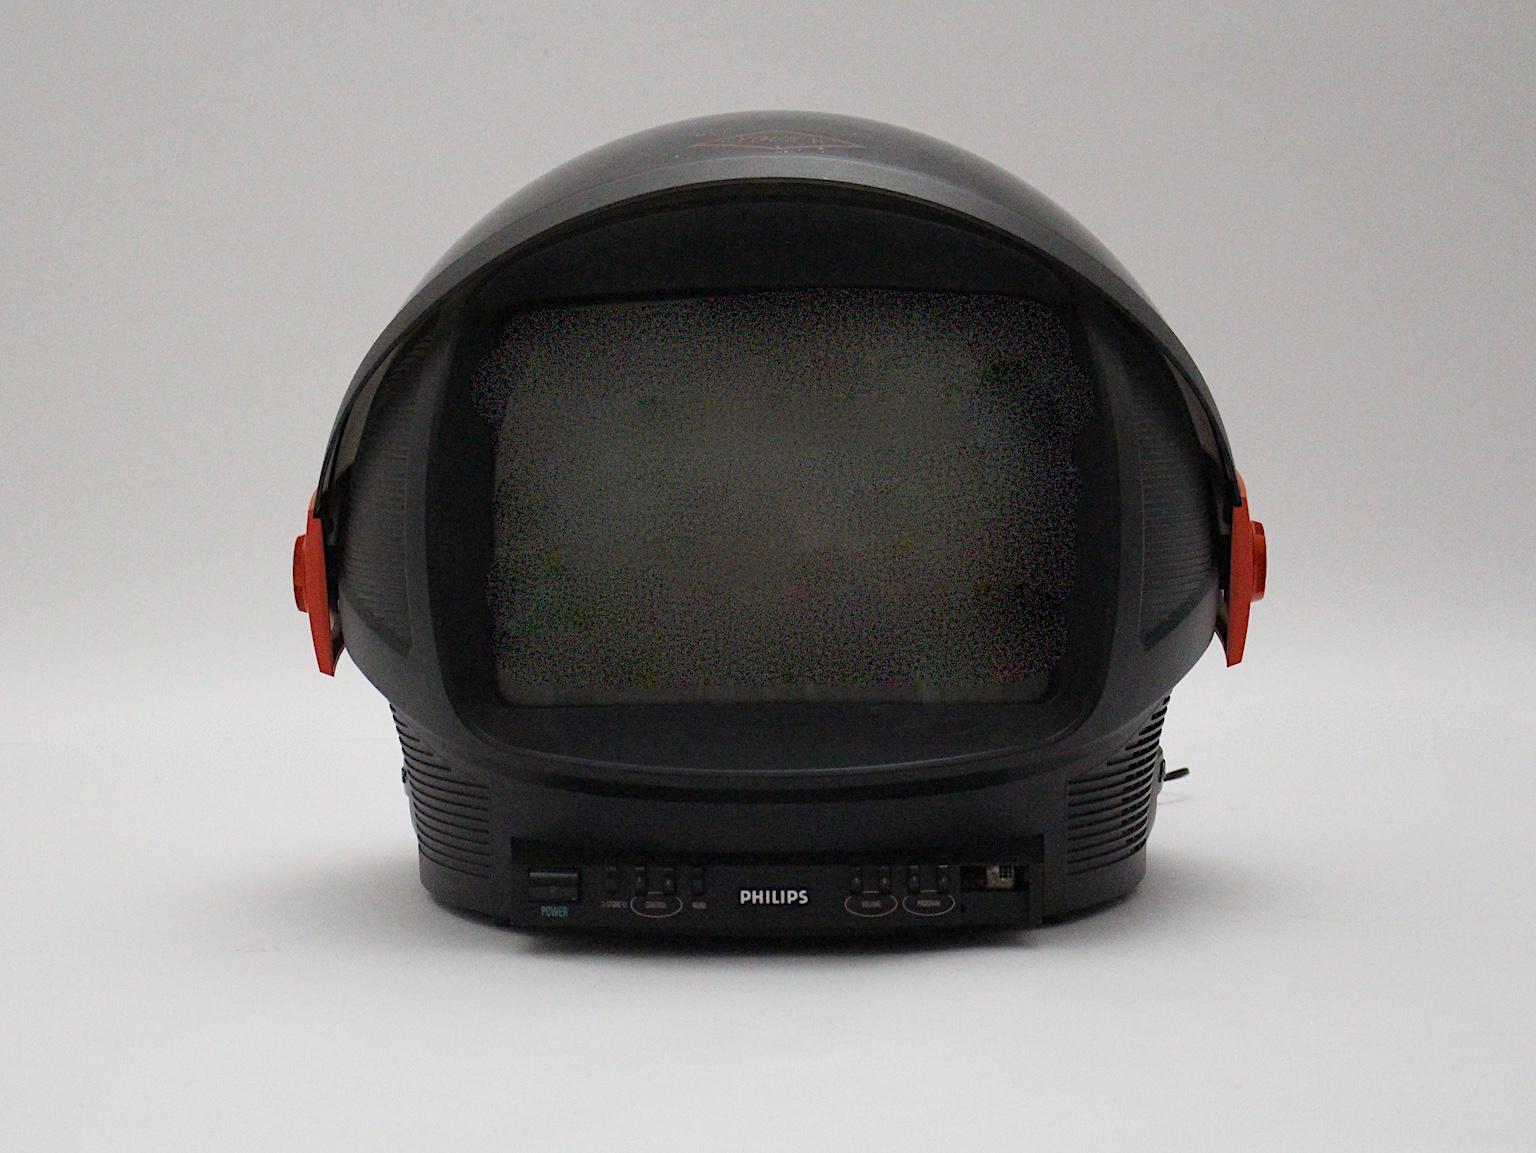  Weltraumzeitalter Vintage-Fernseher in Rot und Plastik mit dem Namen Entdecker, der von Philips, Niederlande, 1980er Jahre, hergestellt wurde.
Seine außergewöhnliche Form macht dieses Designstück so faszinierend.
Das Gehäuse des Fernsehers ist